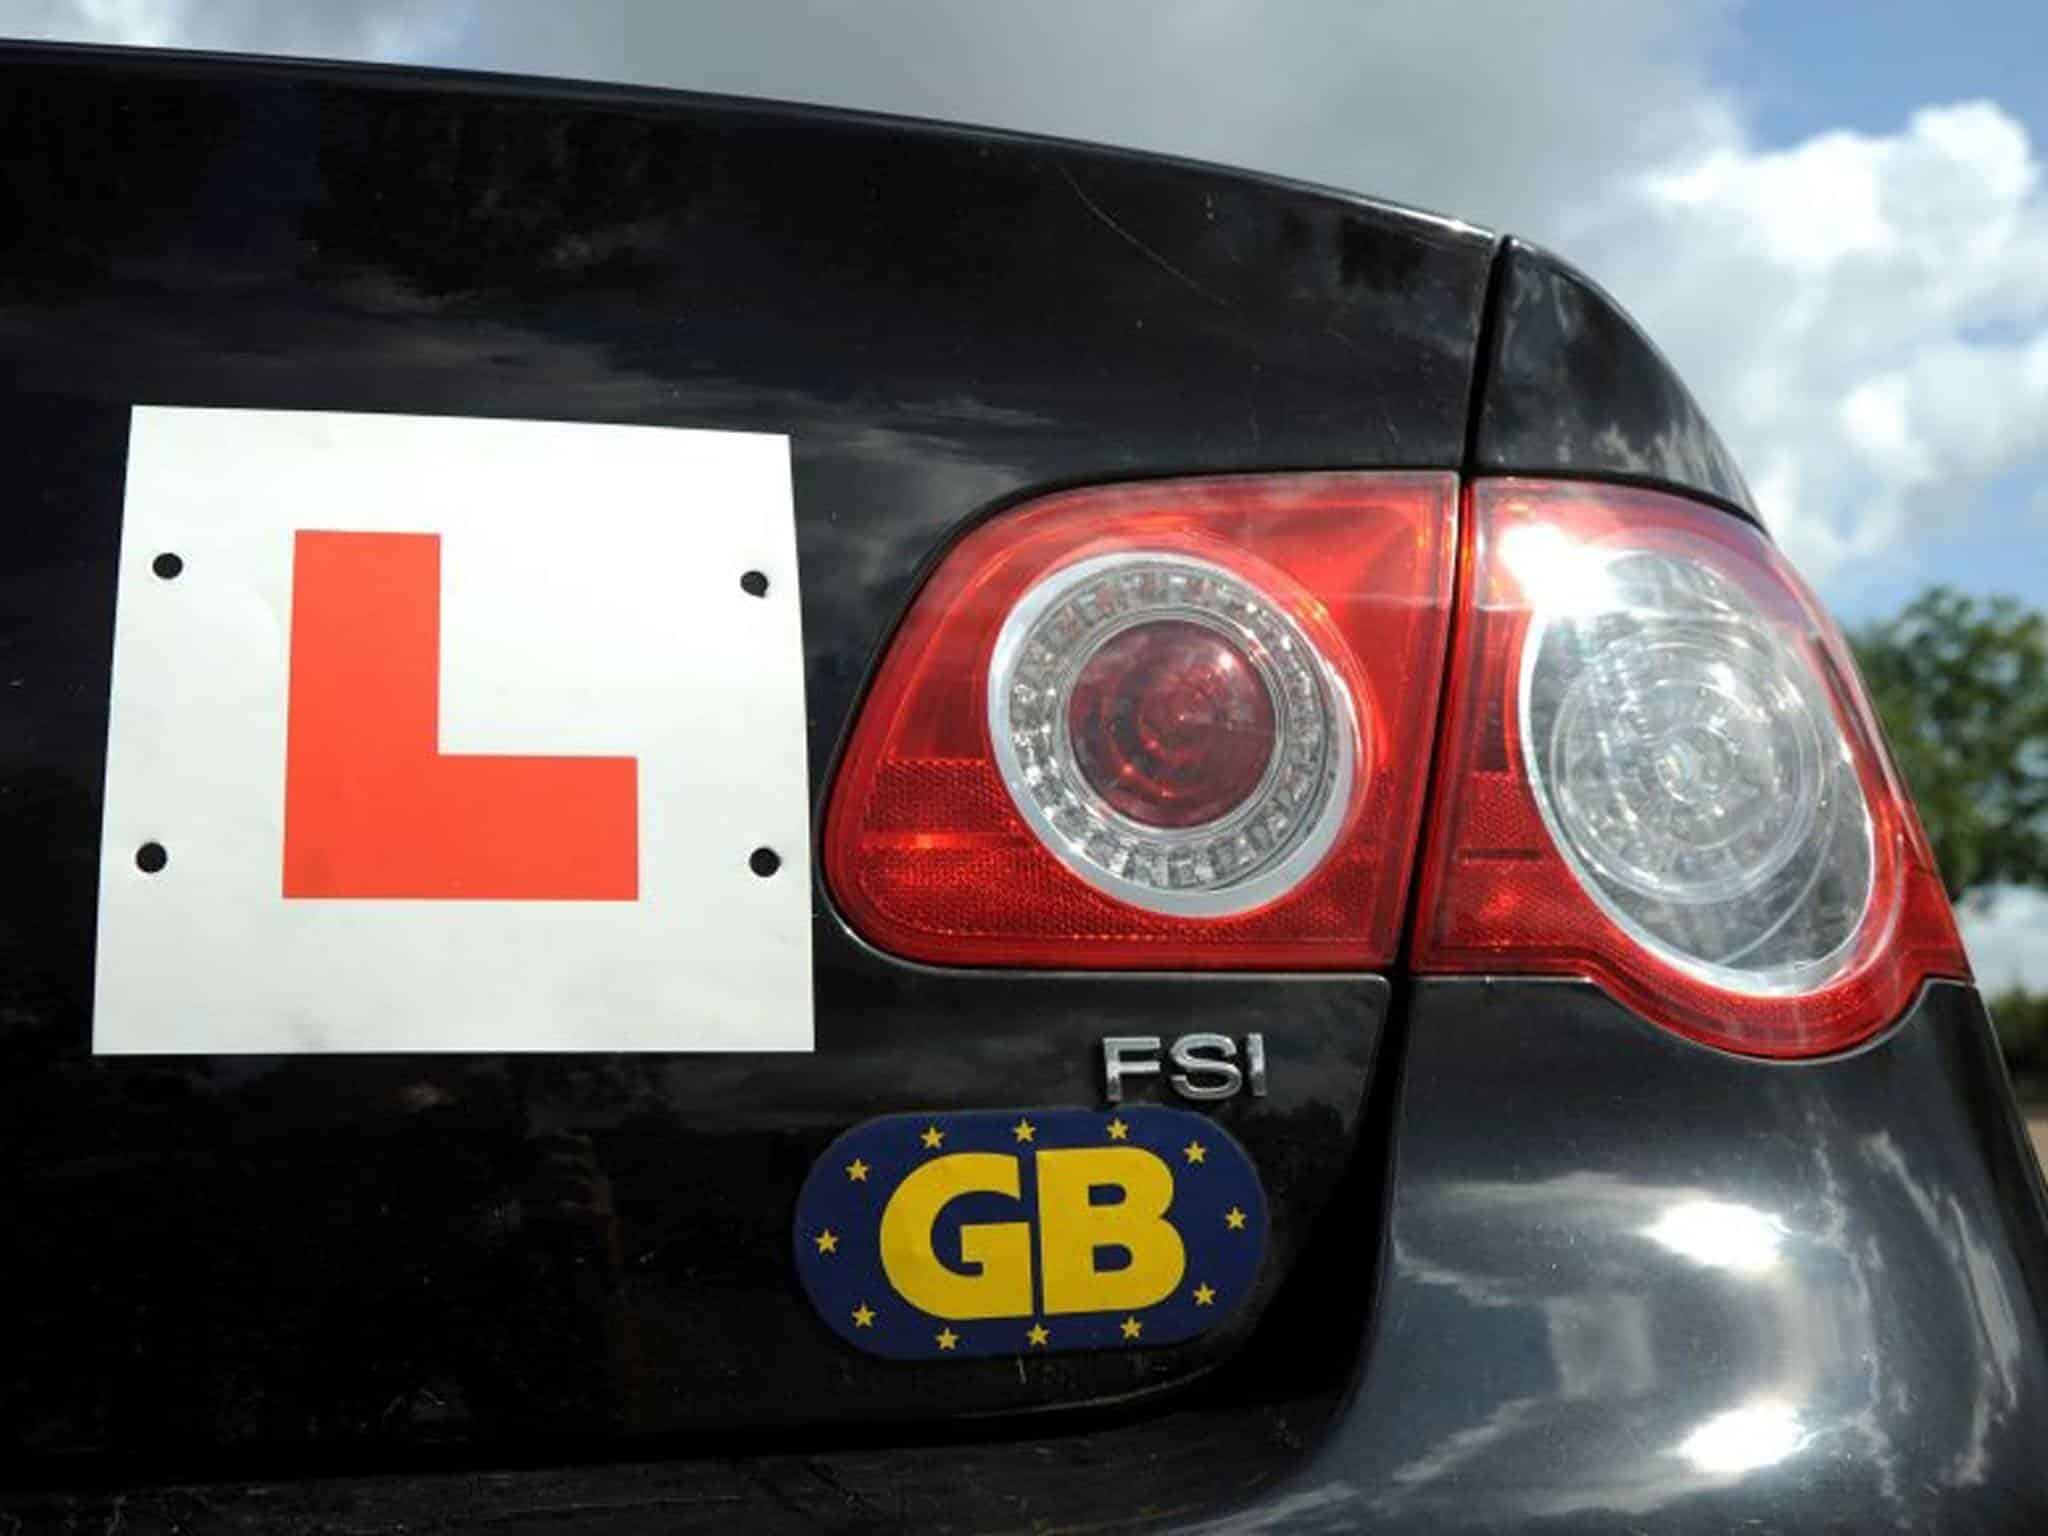 Prawo jazdy provisional w UK czy mogę prowadzić auto z ubezpieczeniem, jeśli nie jestem dodany do polisy?